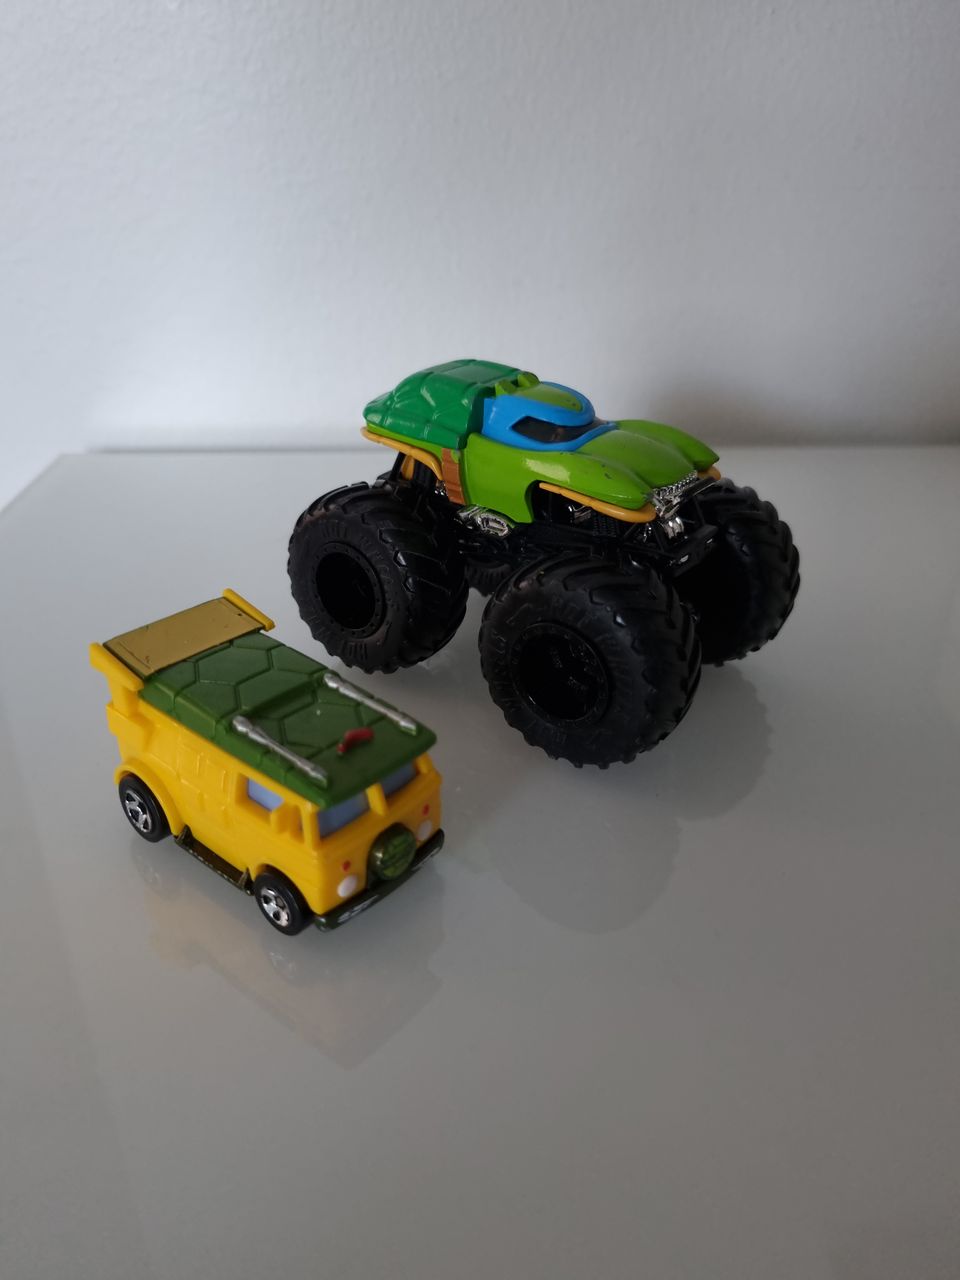 Hot Wheels Monster truck (Teenage Mutant Ninja Turtles Leonardo)